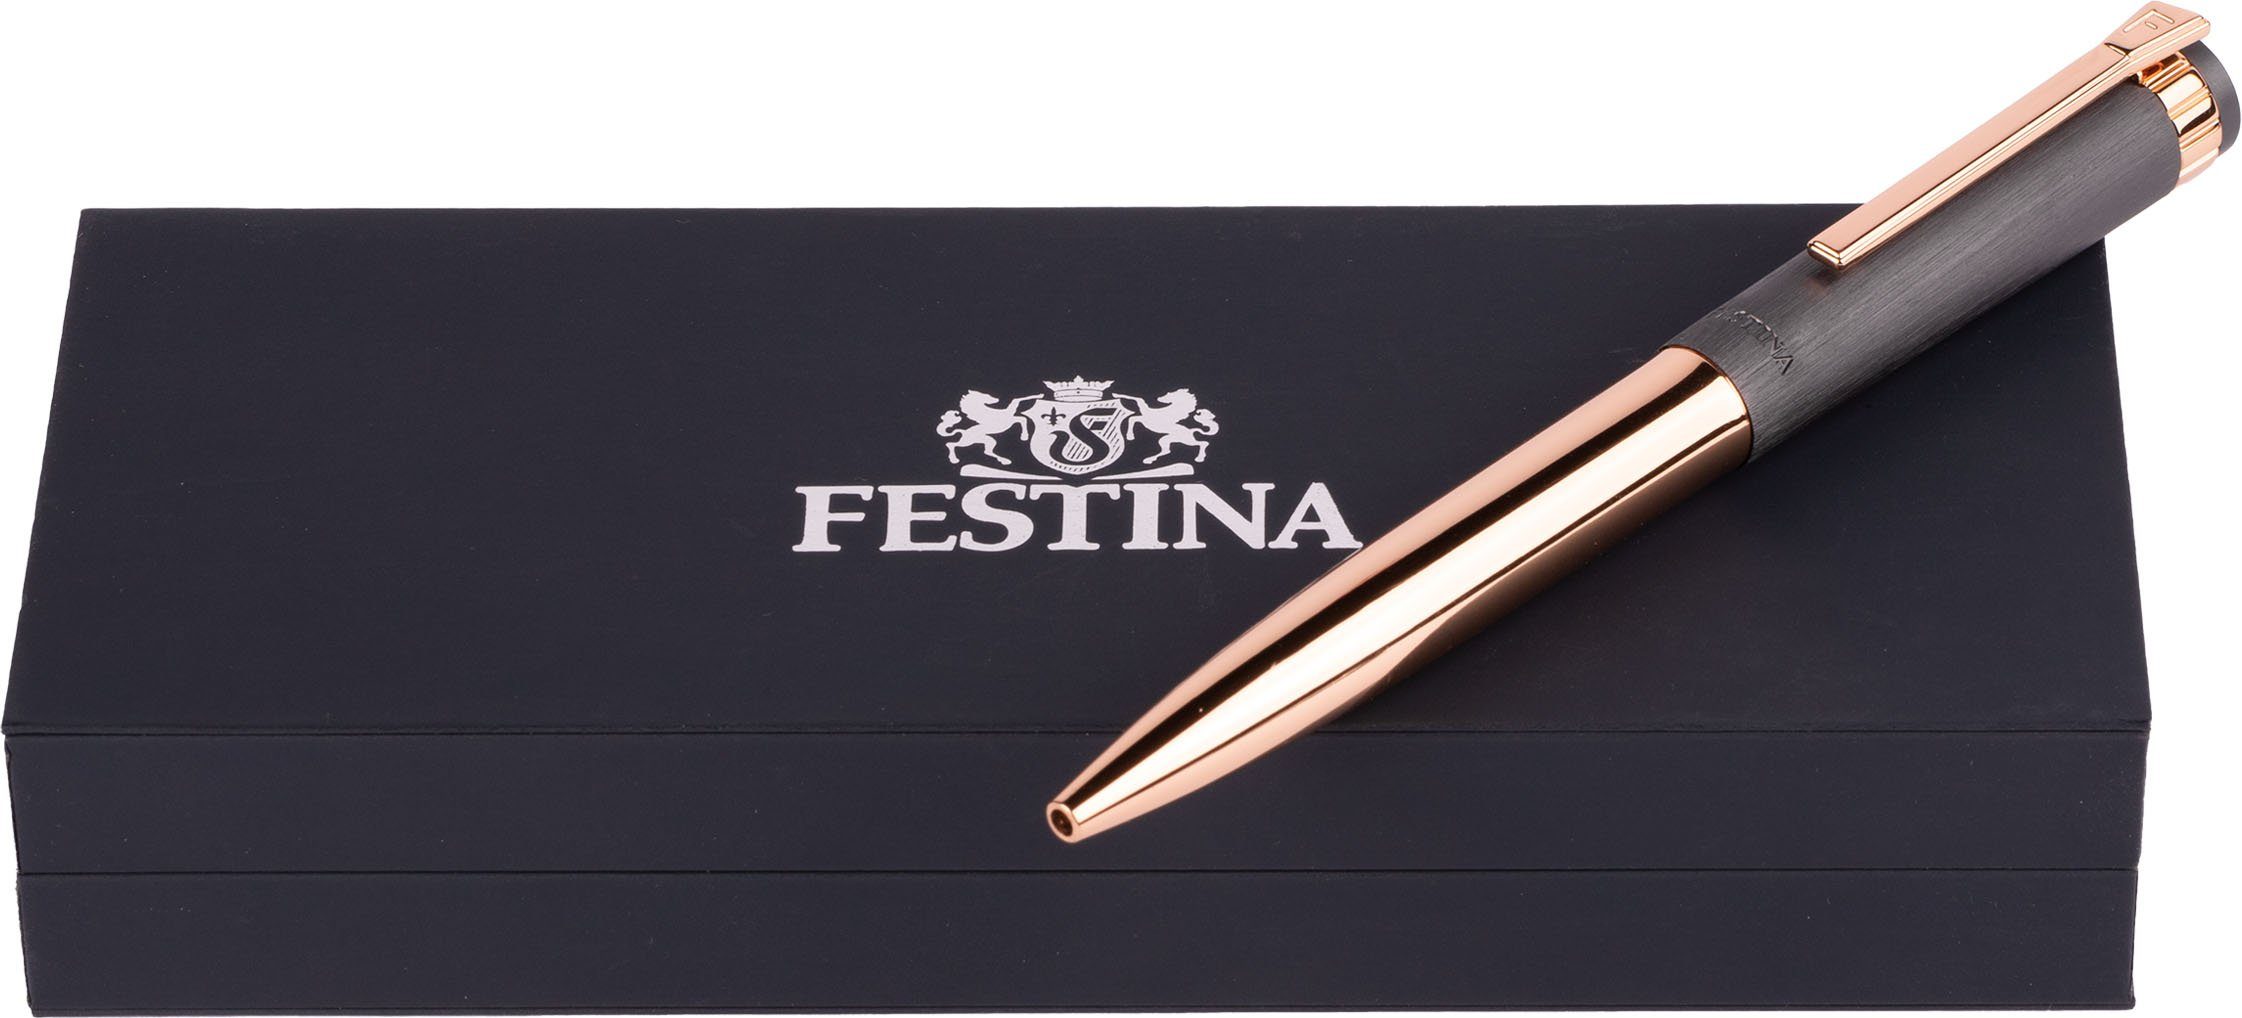 als FWS4107/D, Geschenk Festina inklusive Kugelschreiber Prestige, Etui, auch ideal